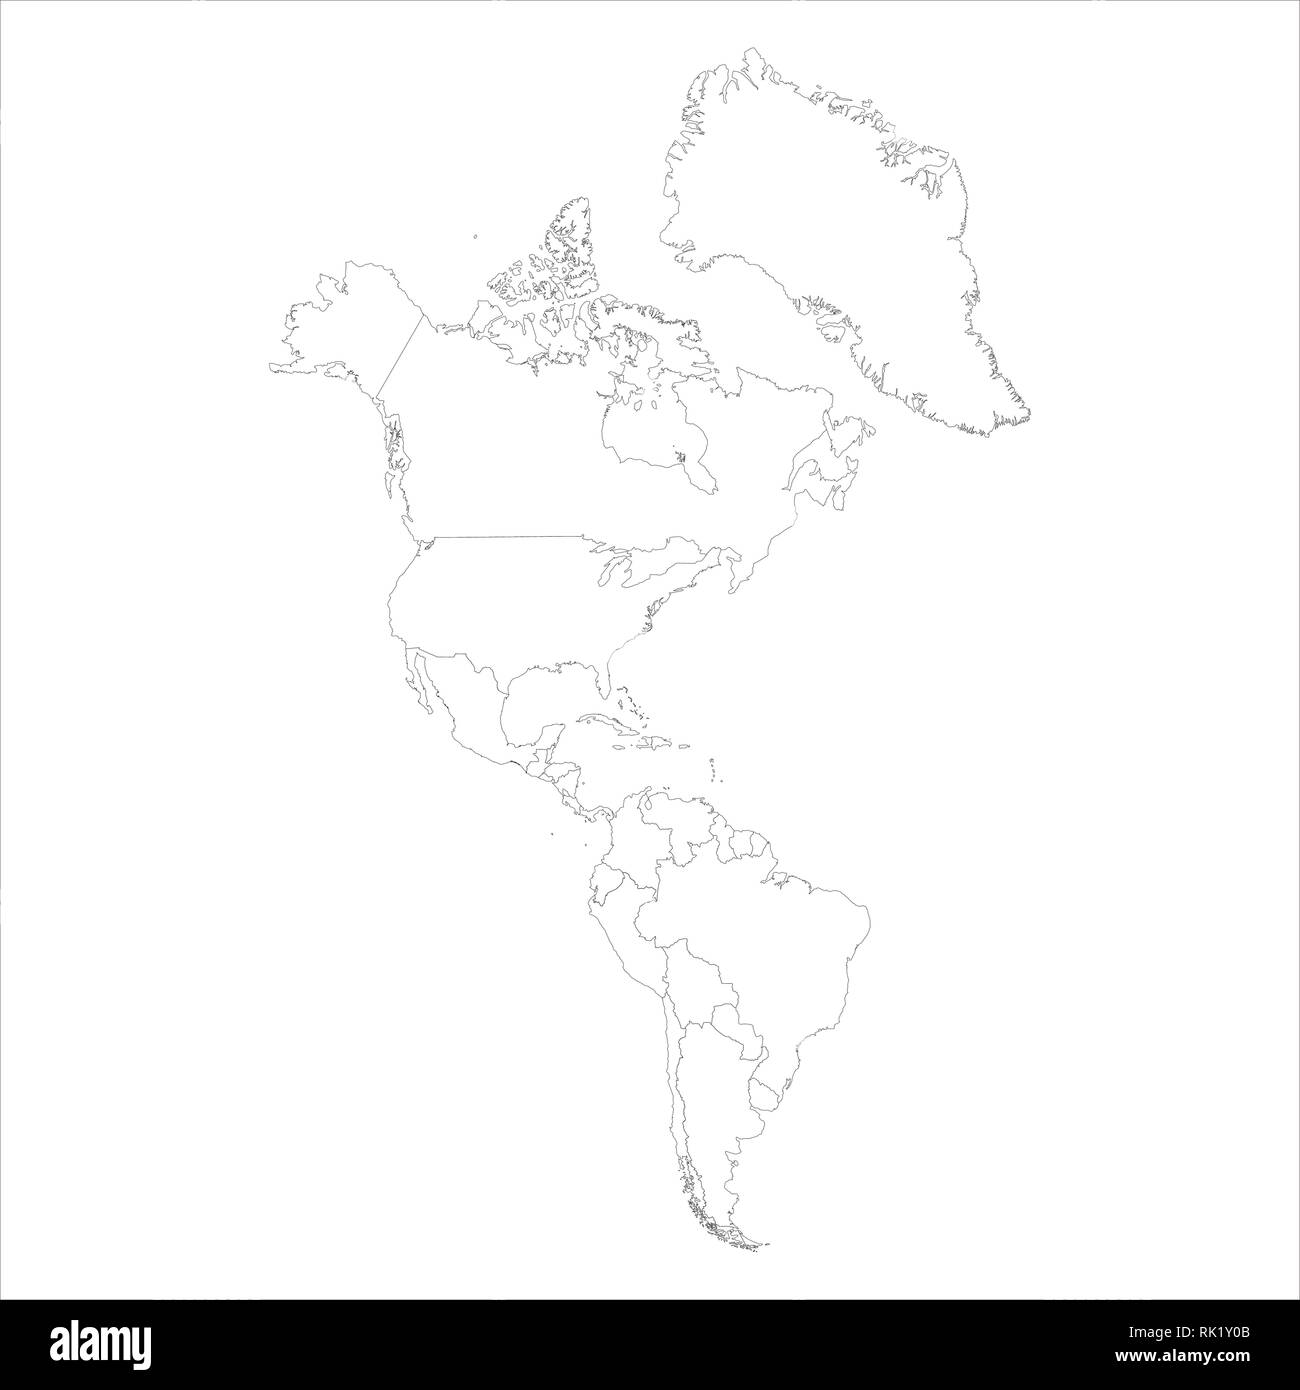 La carte d'illustration vectorielle, de l'Amérique du Nord et isolé sur fond blanc. Schéma d'encombrement du continent américain d'une icône Illustration de Vecteur